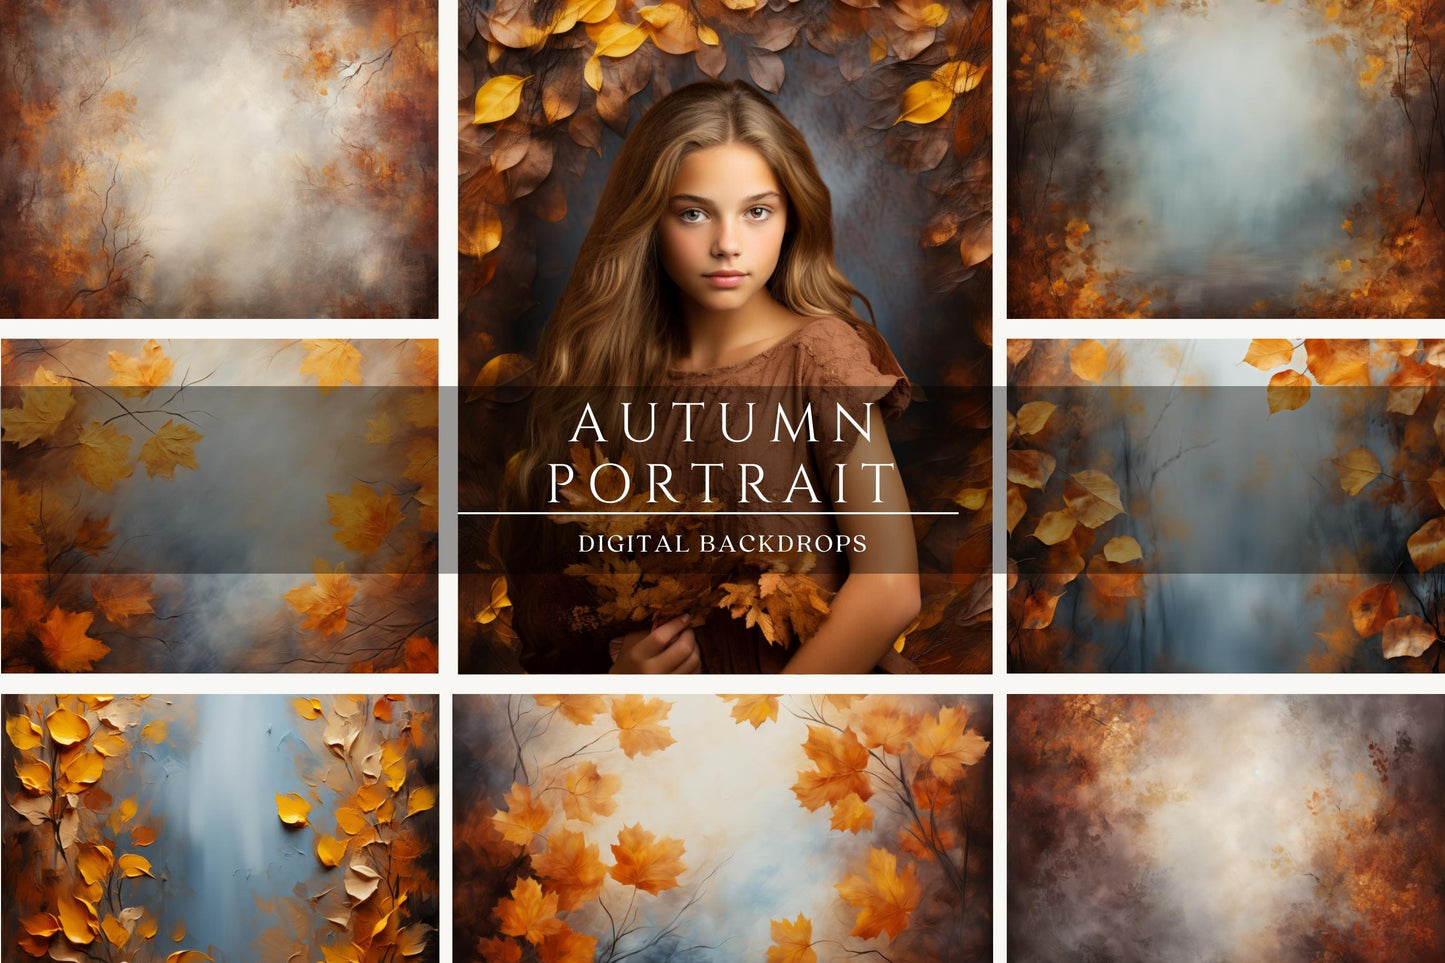 Autumn Portrait Digital Backdrops